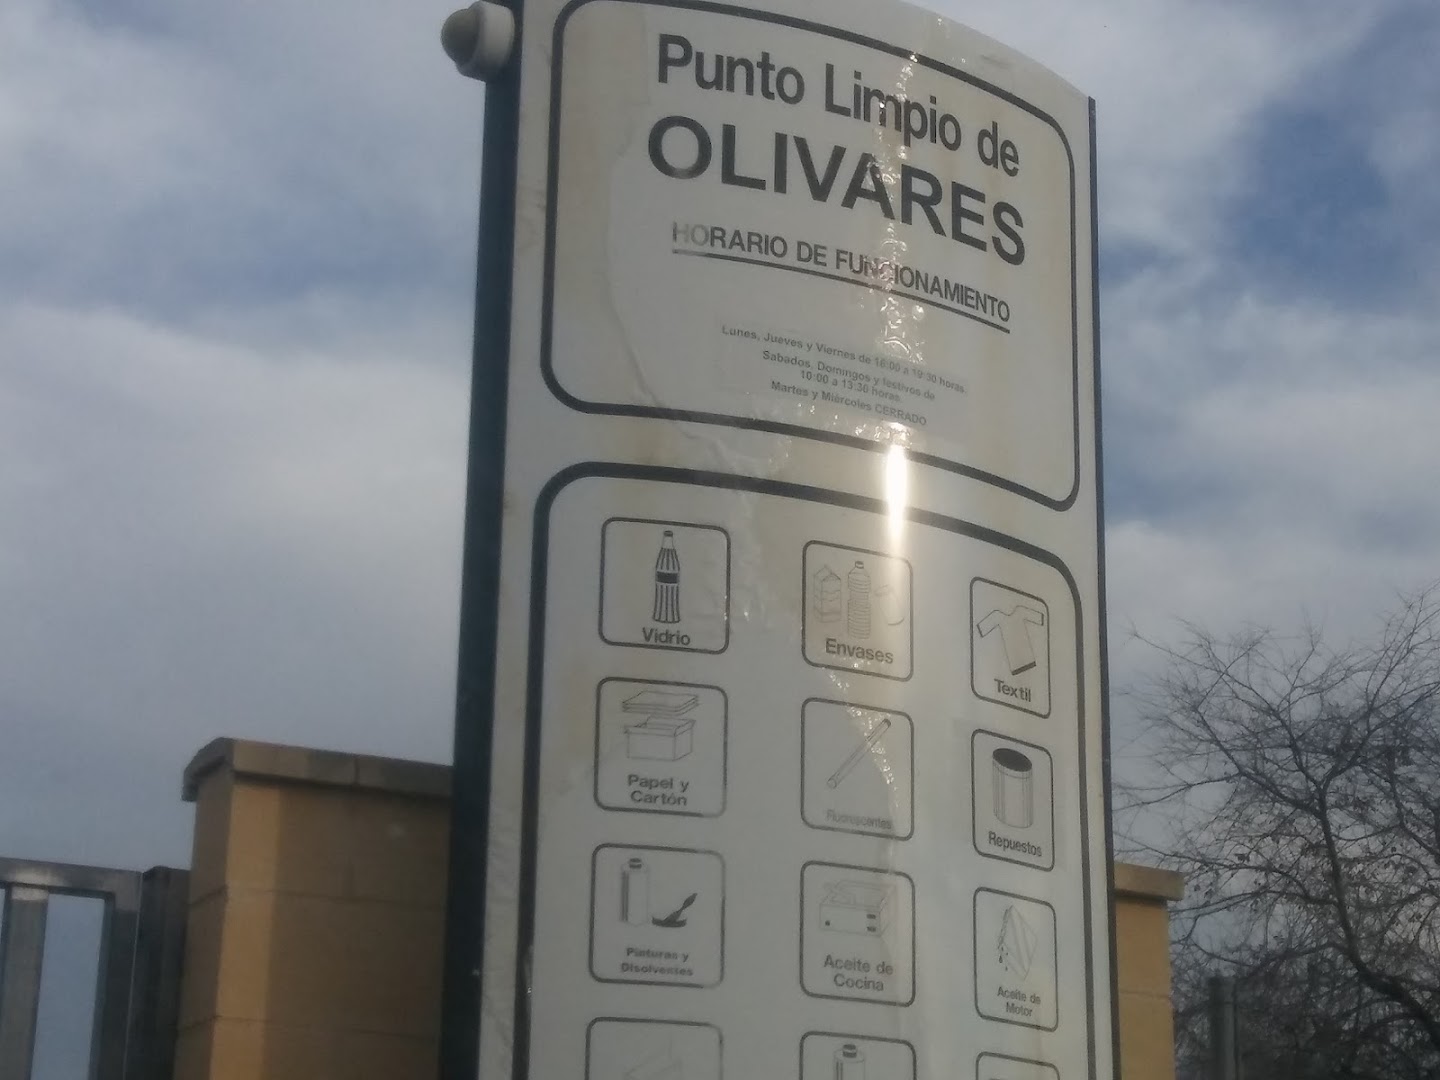 Punto Limpio Olivares